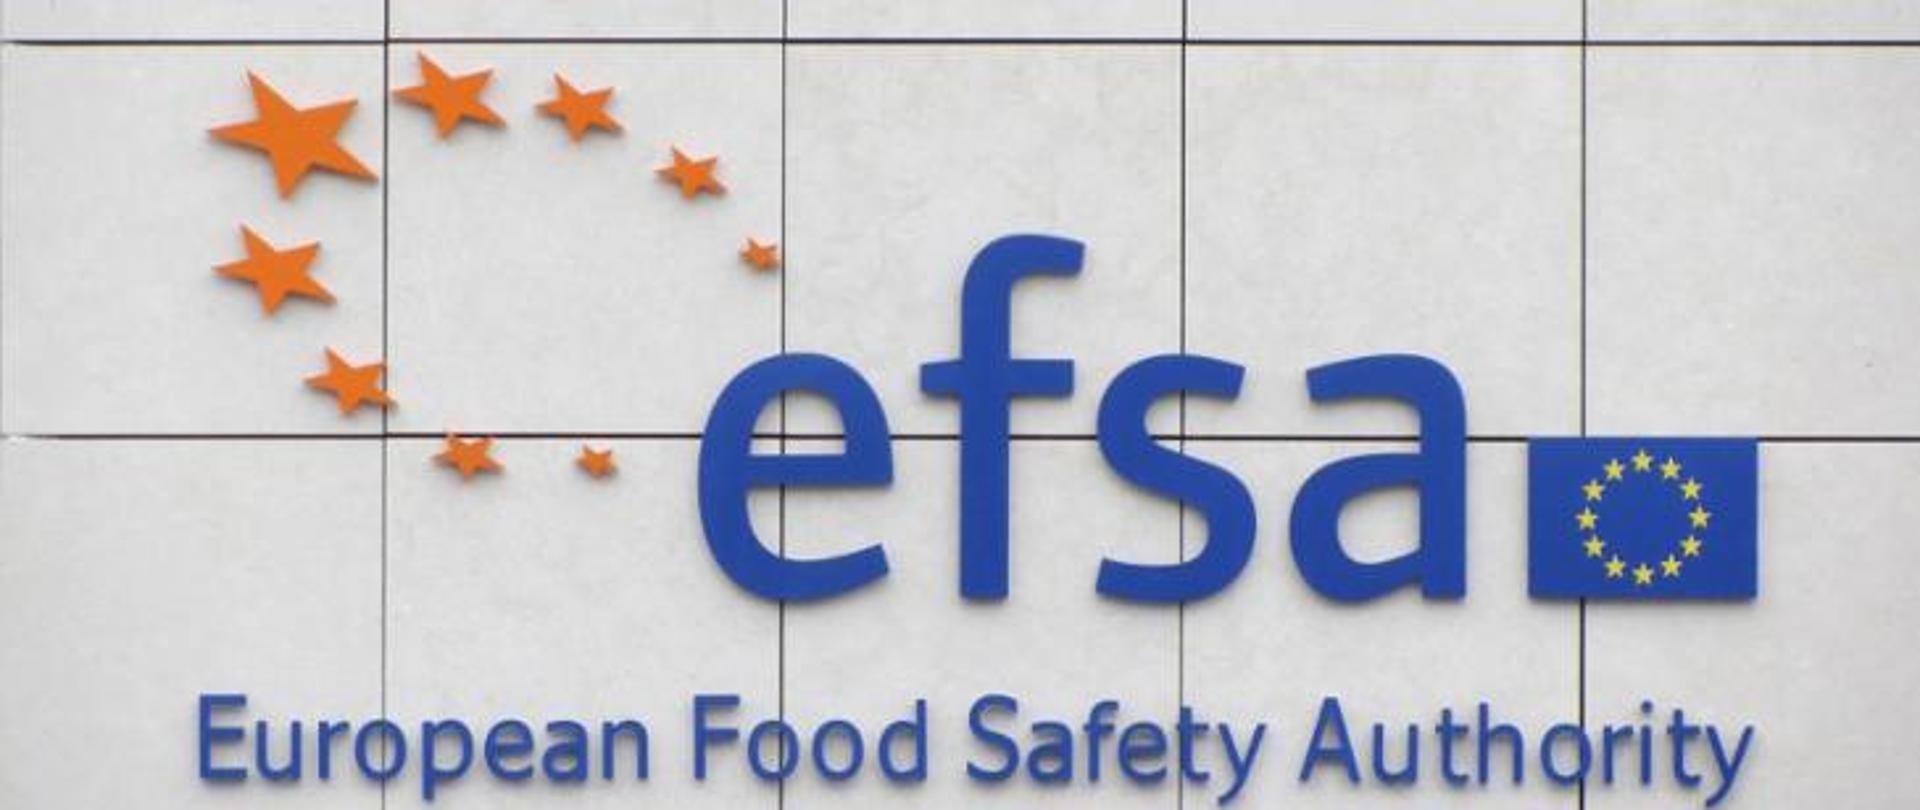 Na zdjęciu znajduje się granatowy napis efsa. Po jego lewej stronie widnieją żółte gwiazdki w okręgu. Po prawej znajduje się flaga Unii Europejskiej. Poniżej widnieje napis European Food Safety Authority. Tło jest w kolorze szarym.